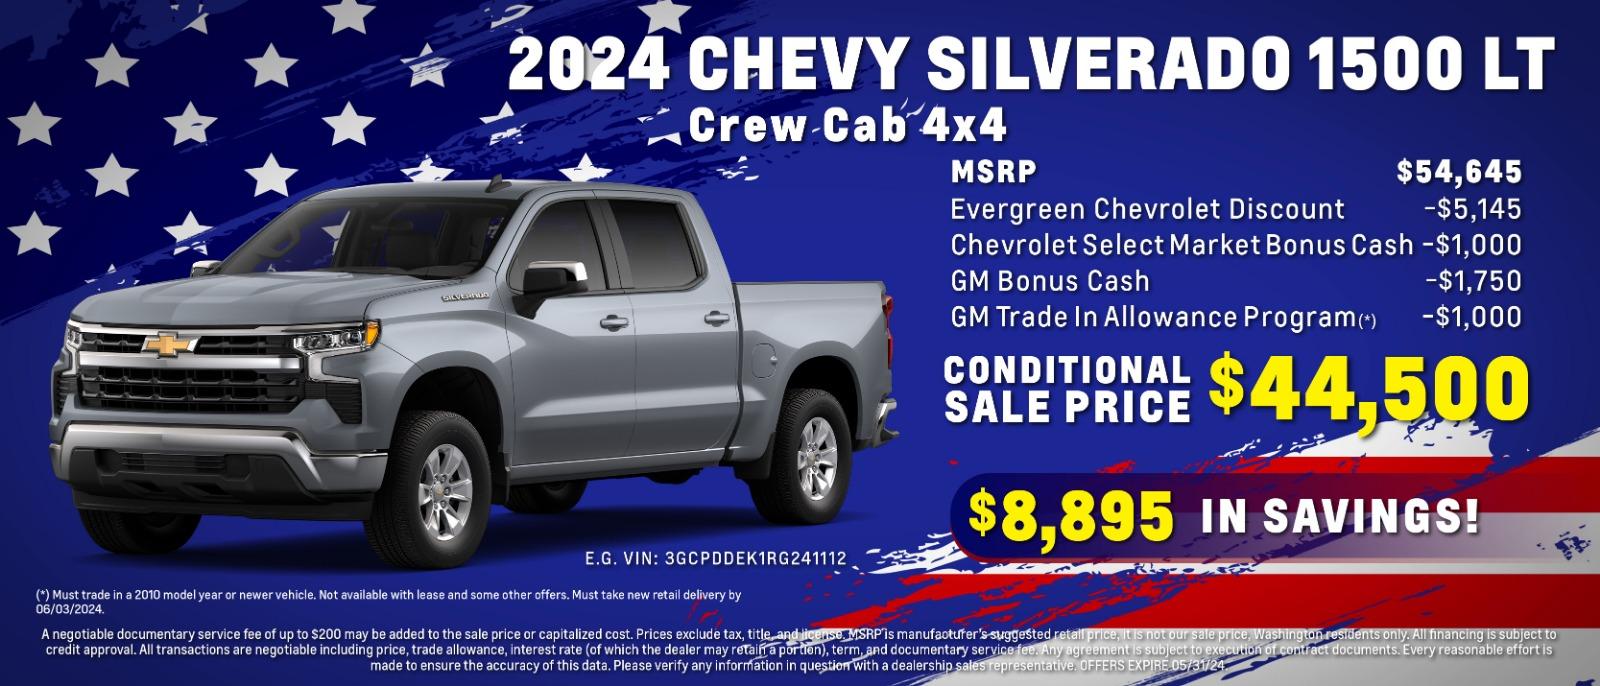 2024 Chevy Silverado 1500 Crew Cab LT 4WD